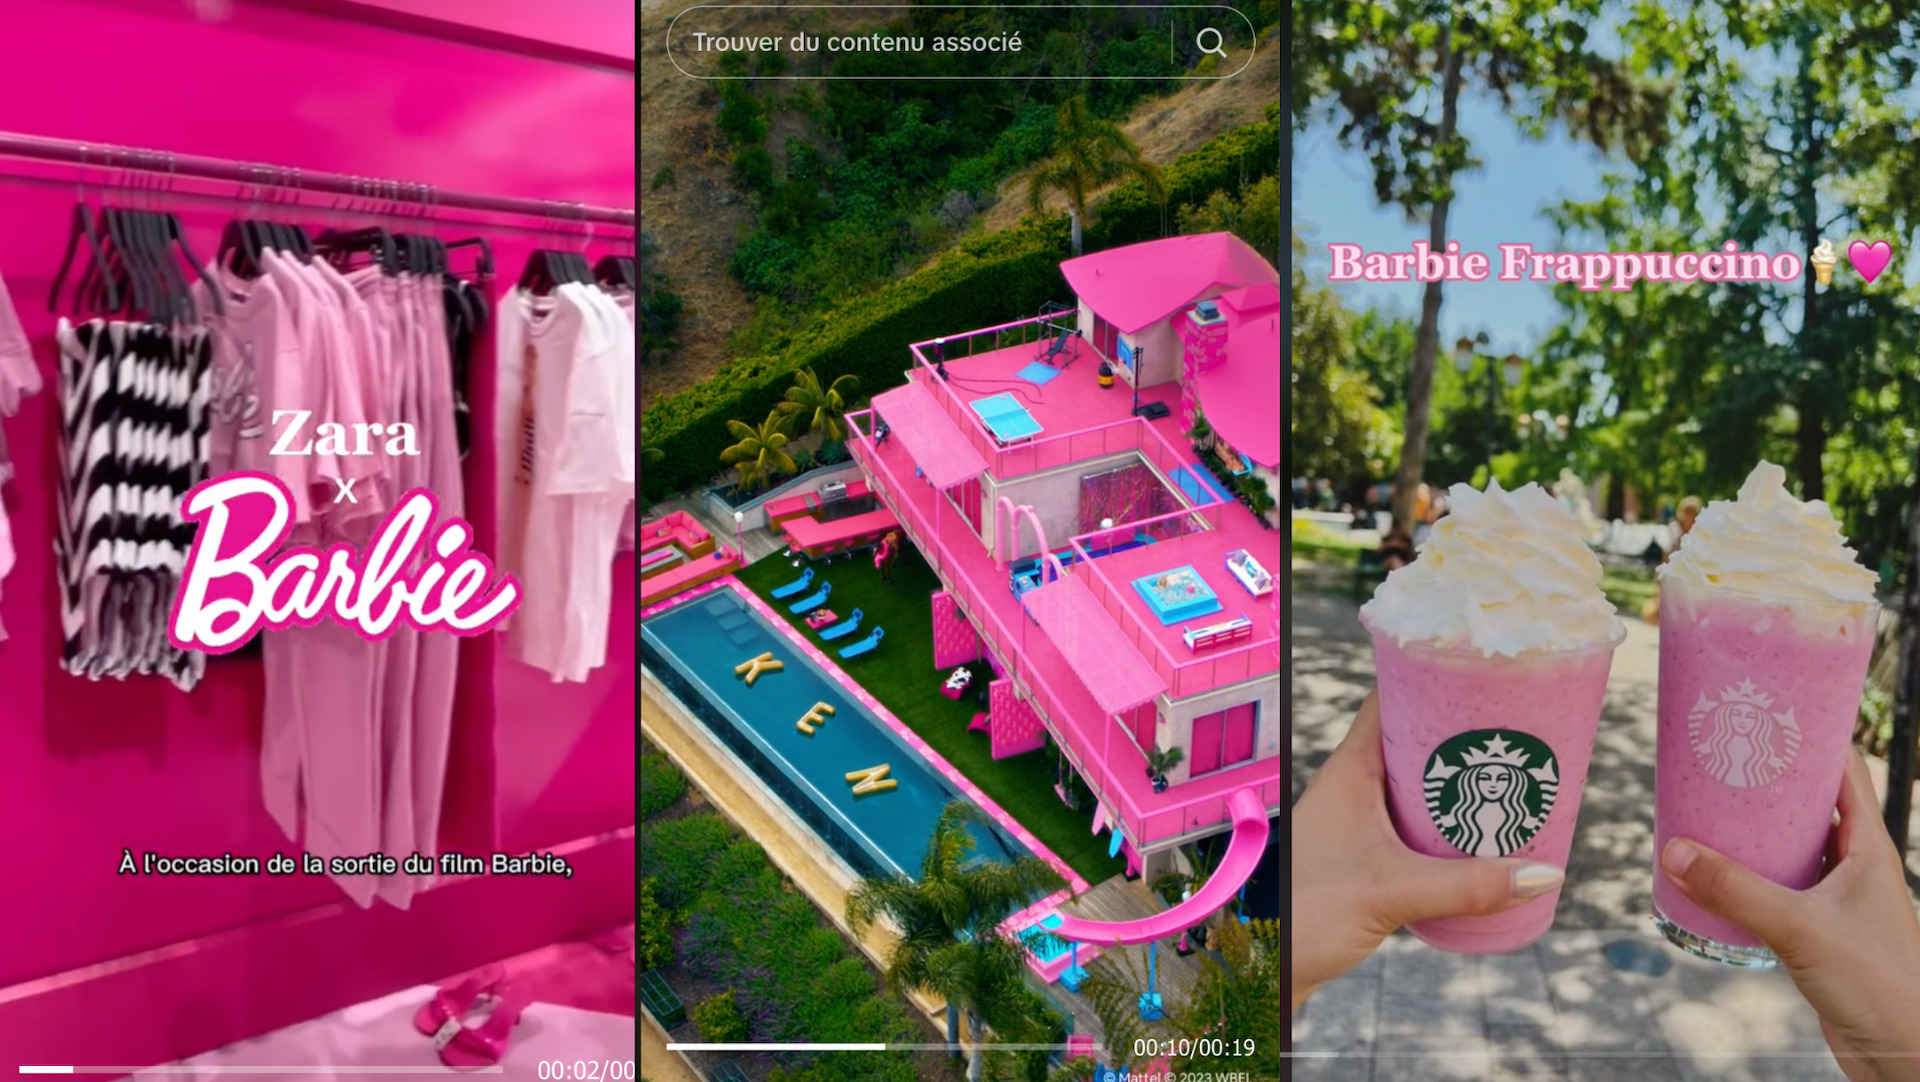 La campagne du film Barbie va loin : voici les idées marketing les plus  démesurées - Numerama